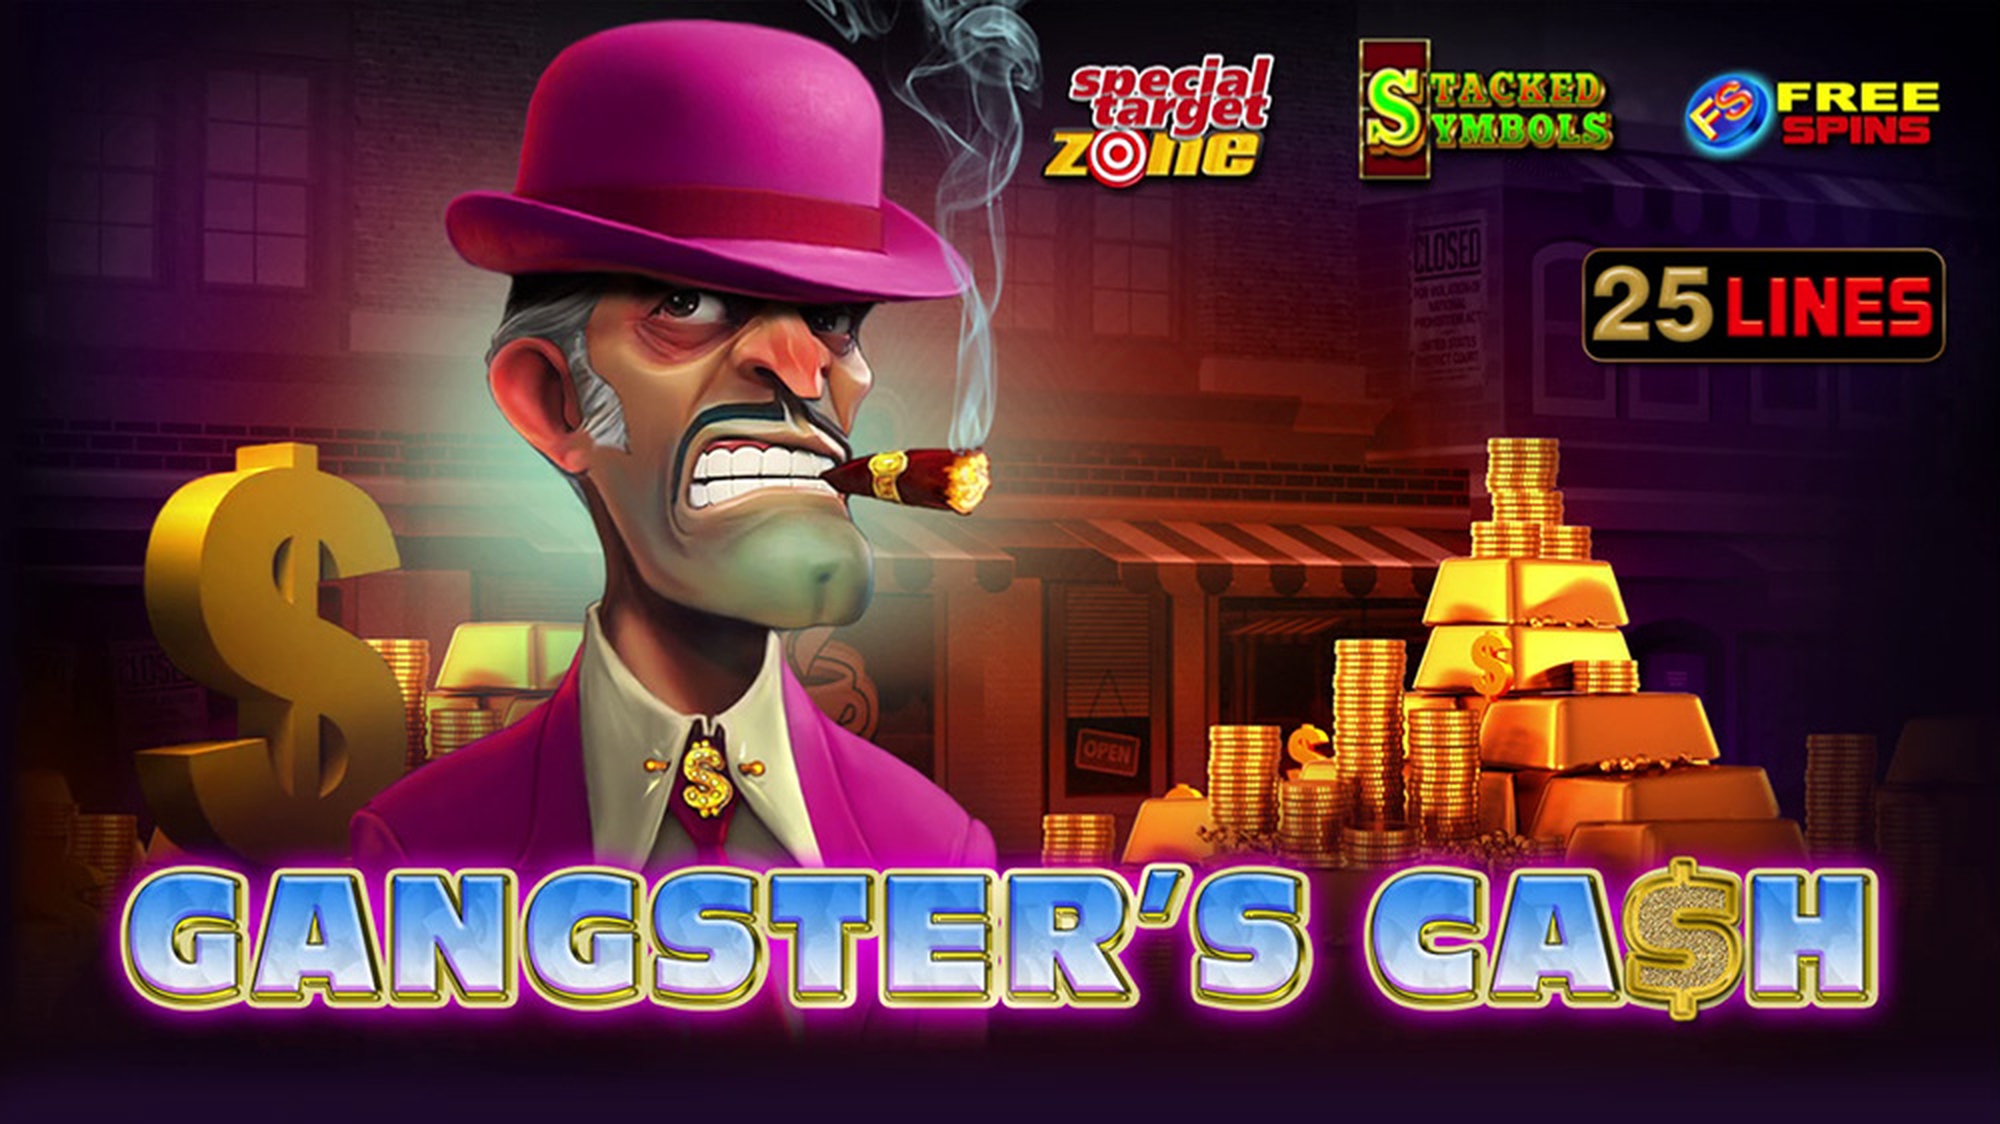 Gangster's Cash demo